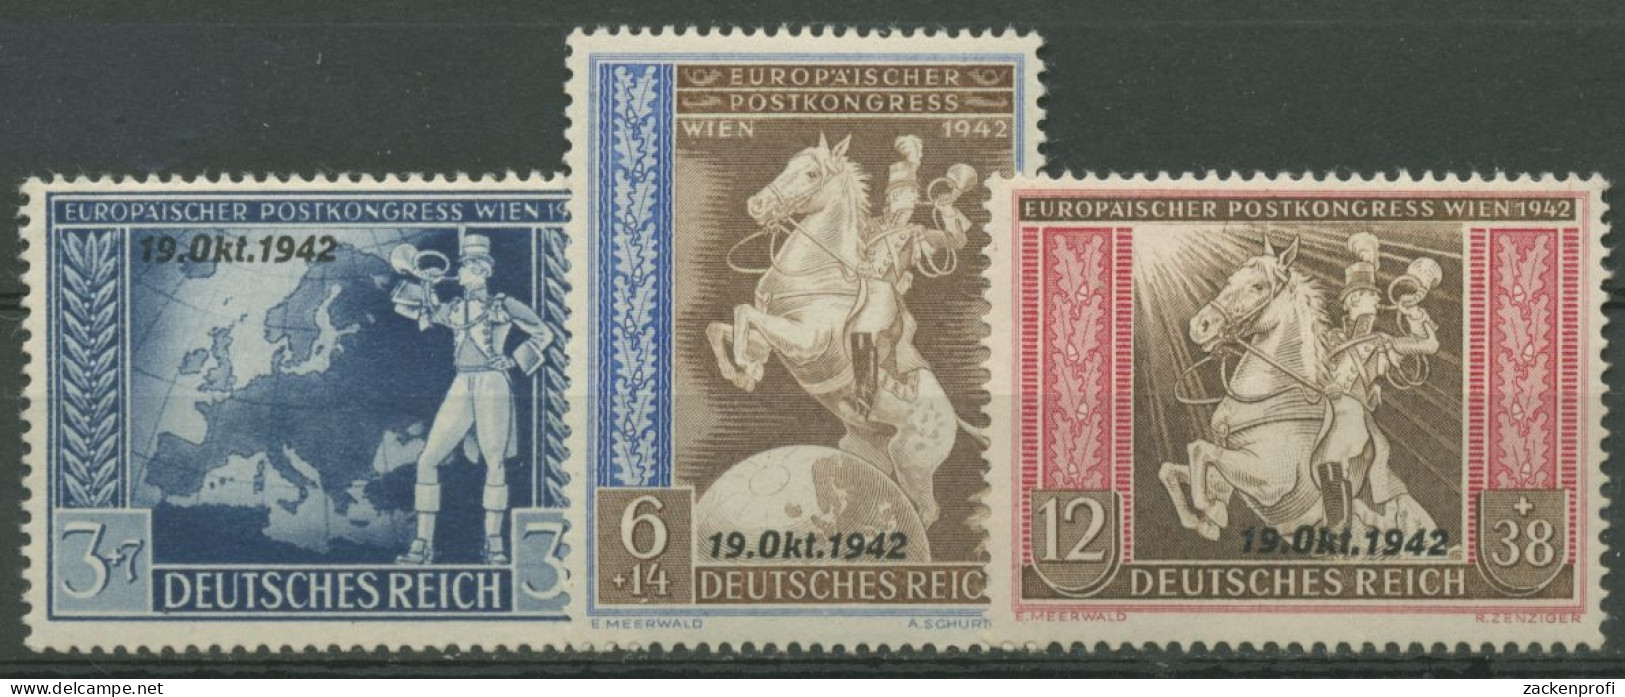 Deutsches Reich 1942 Postkongress Mit Aufdruck 823/25 Mit Falz - Unused Stamps